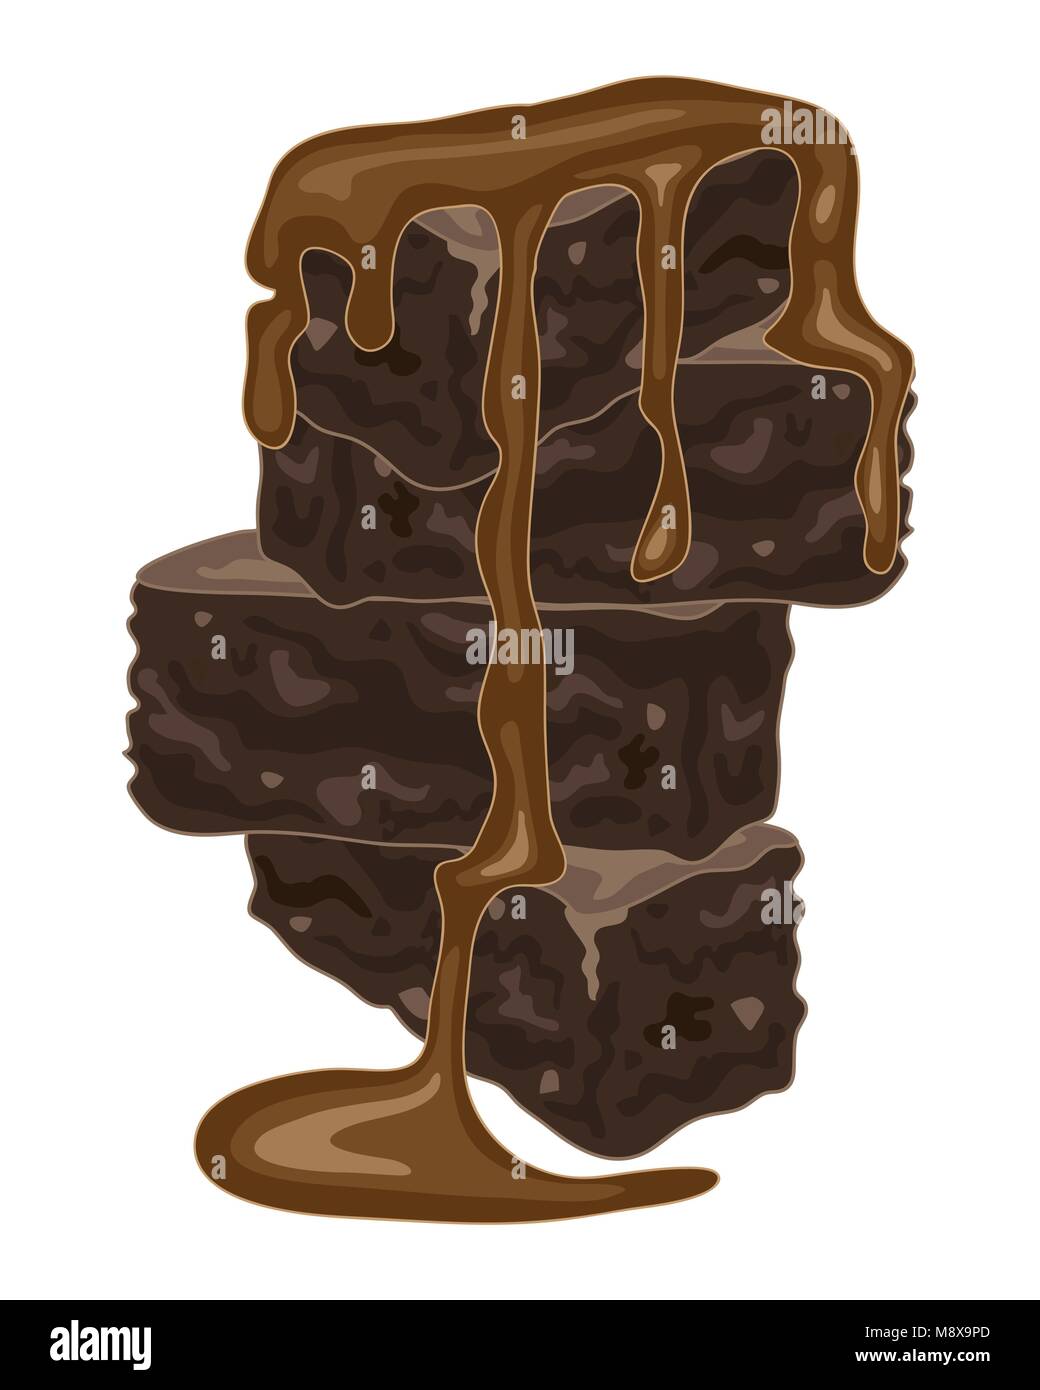 Un vecteur illustration au format eps d'un empilement de brownies au chocolat fait maison avec une riche sauce au chocolat sur fond blanc Illustration de Vecteur